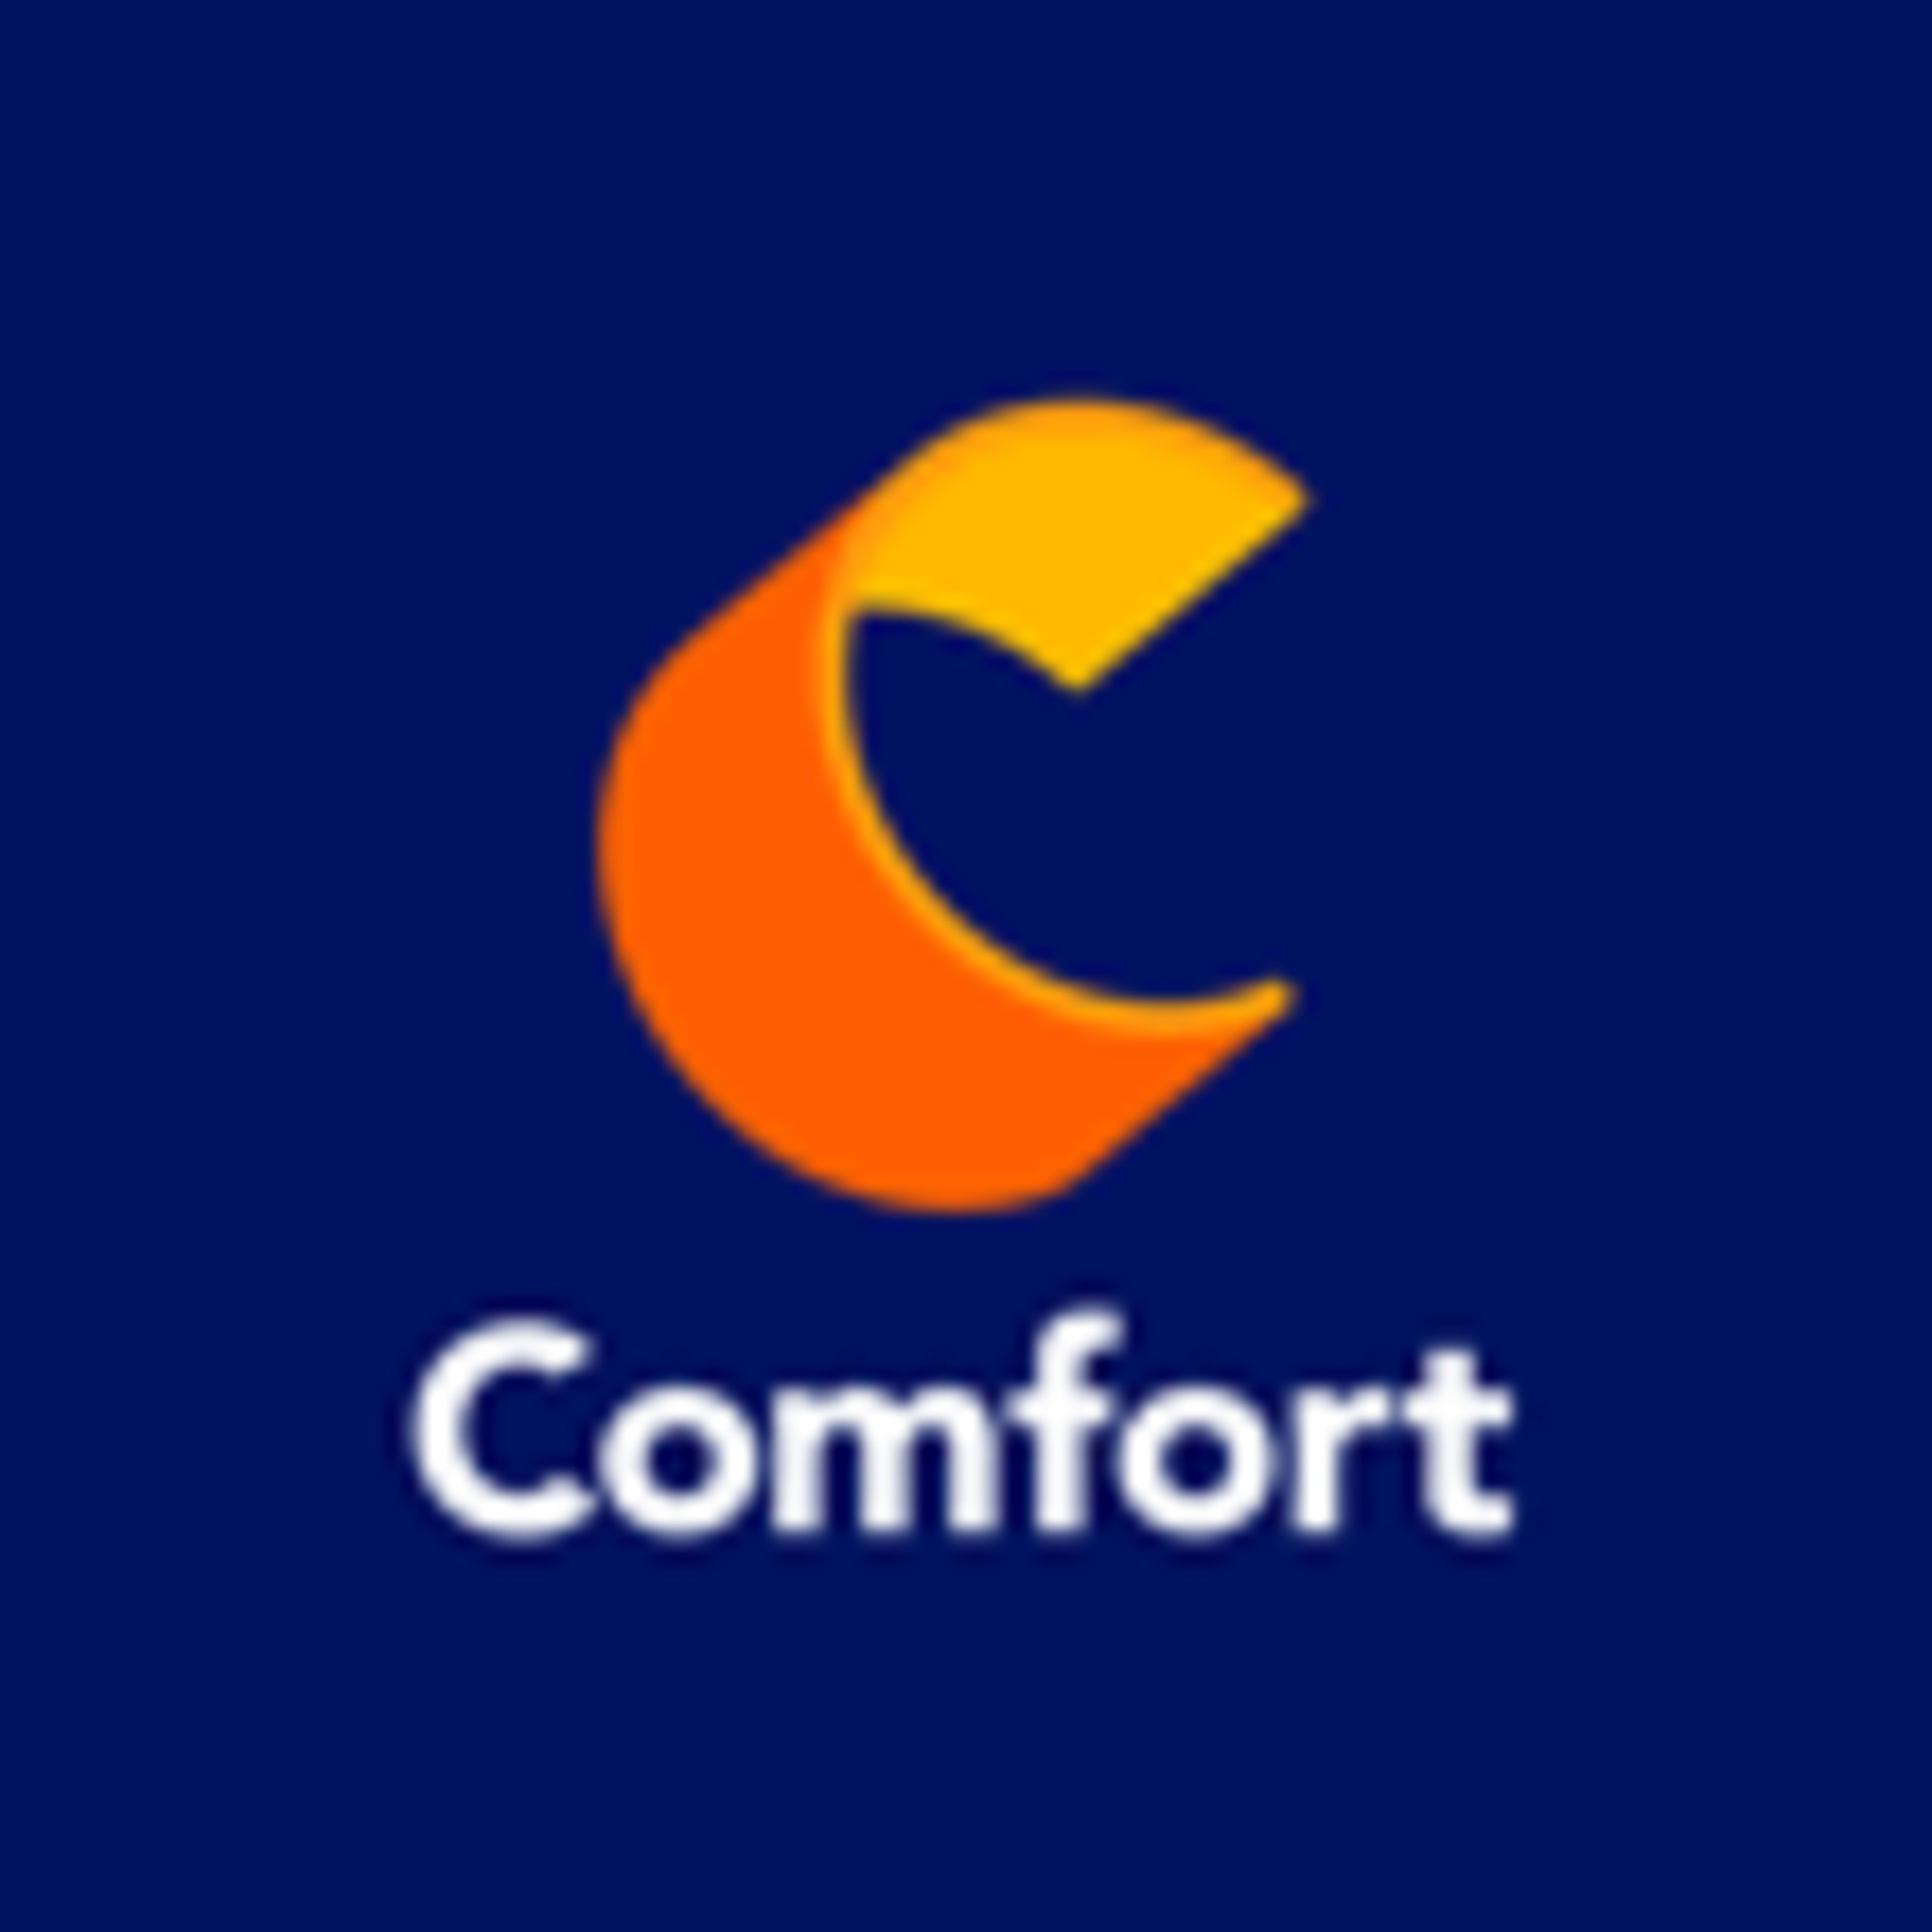 Comfort InnCode